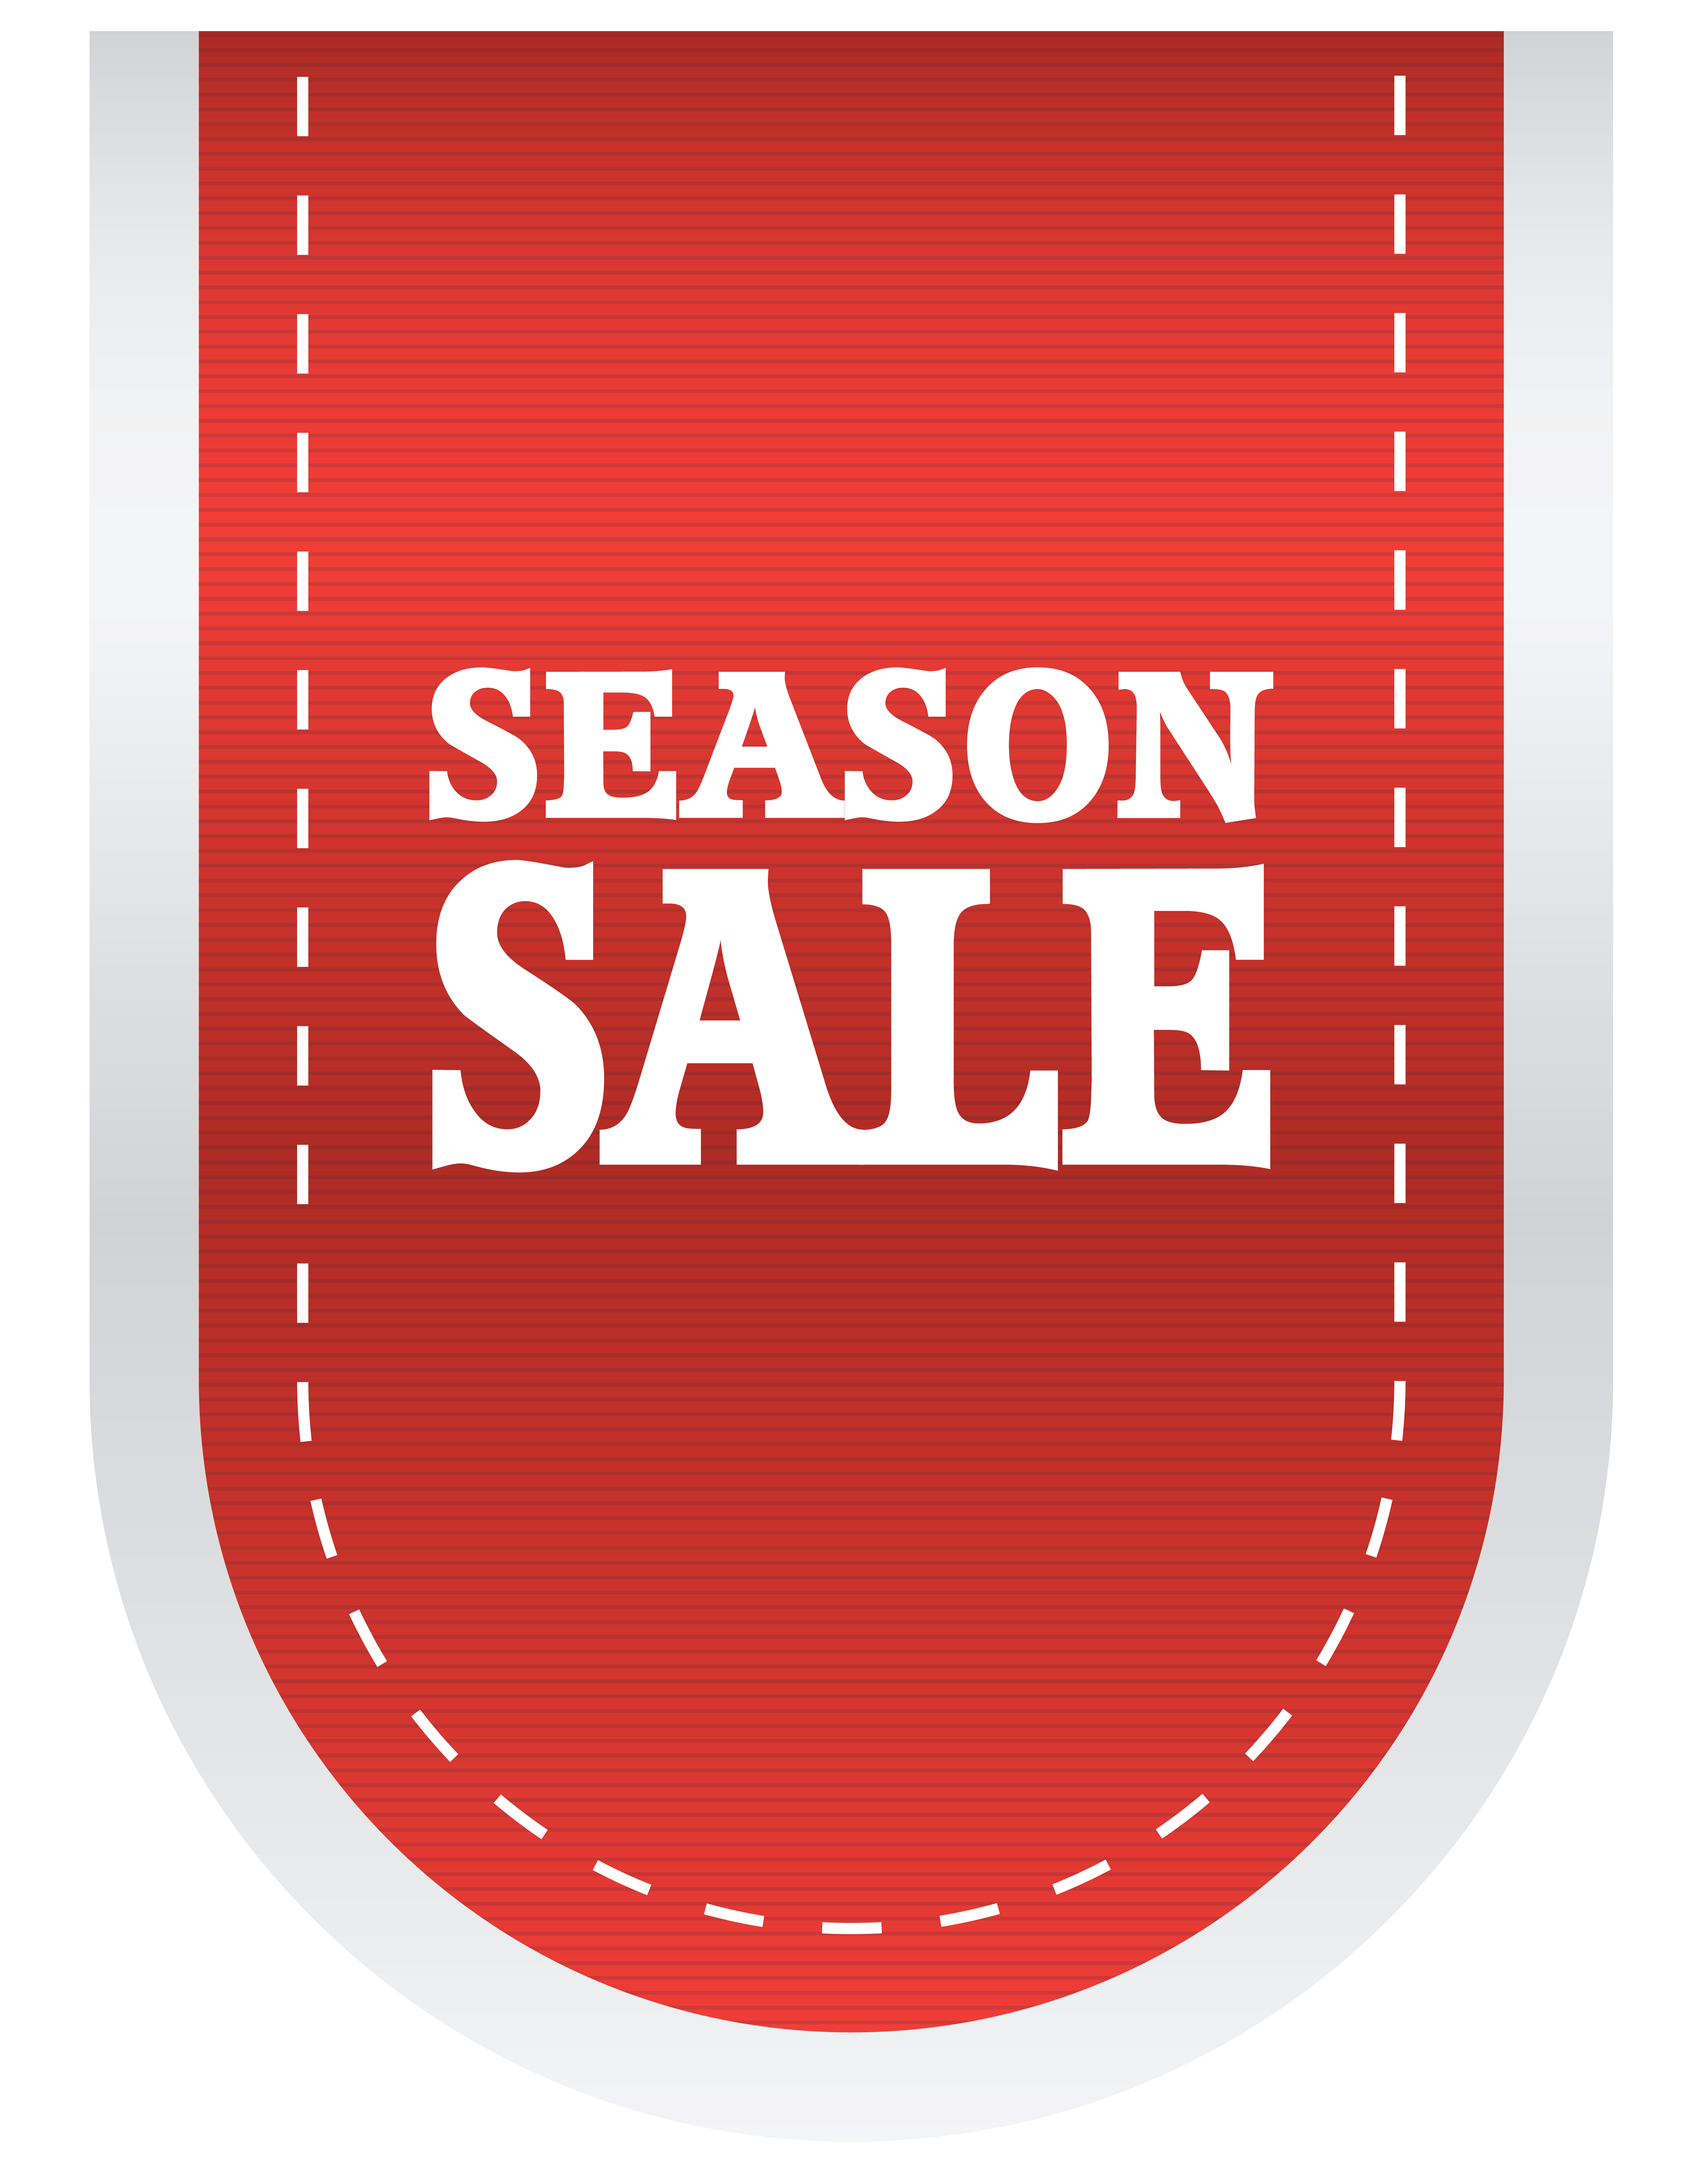 Season Sale Label PNG Clipart Image​